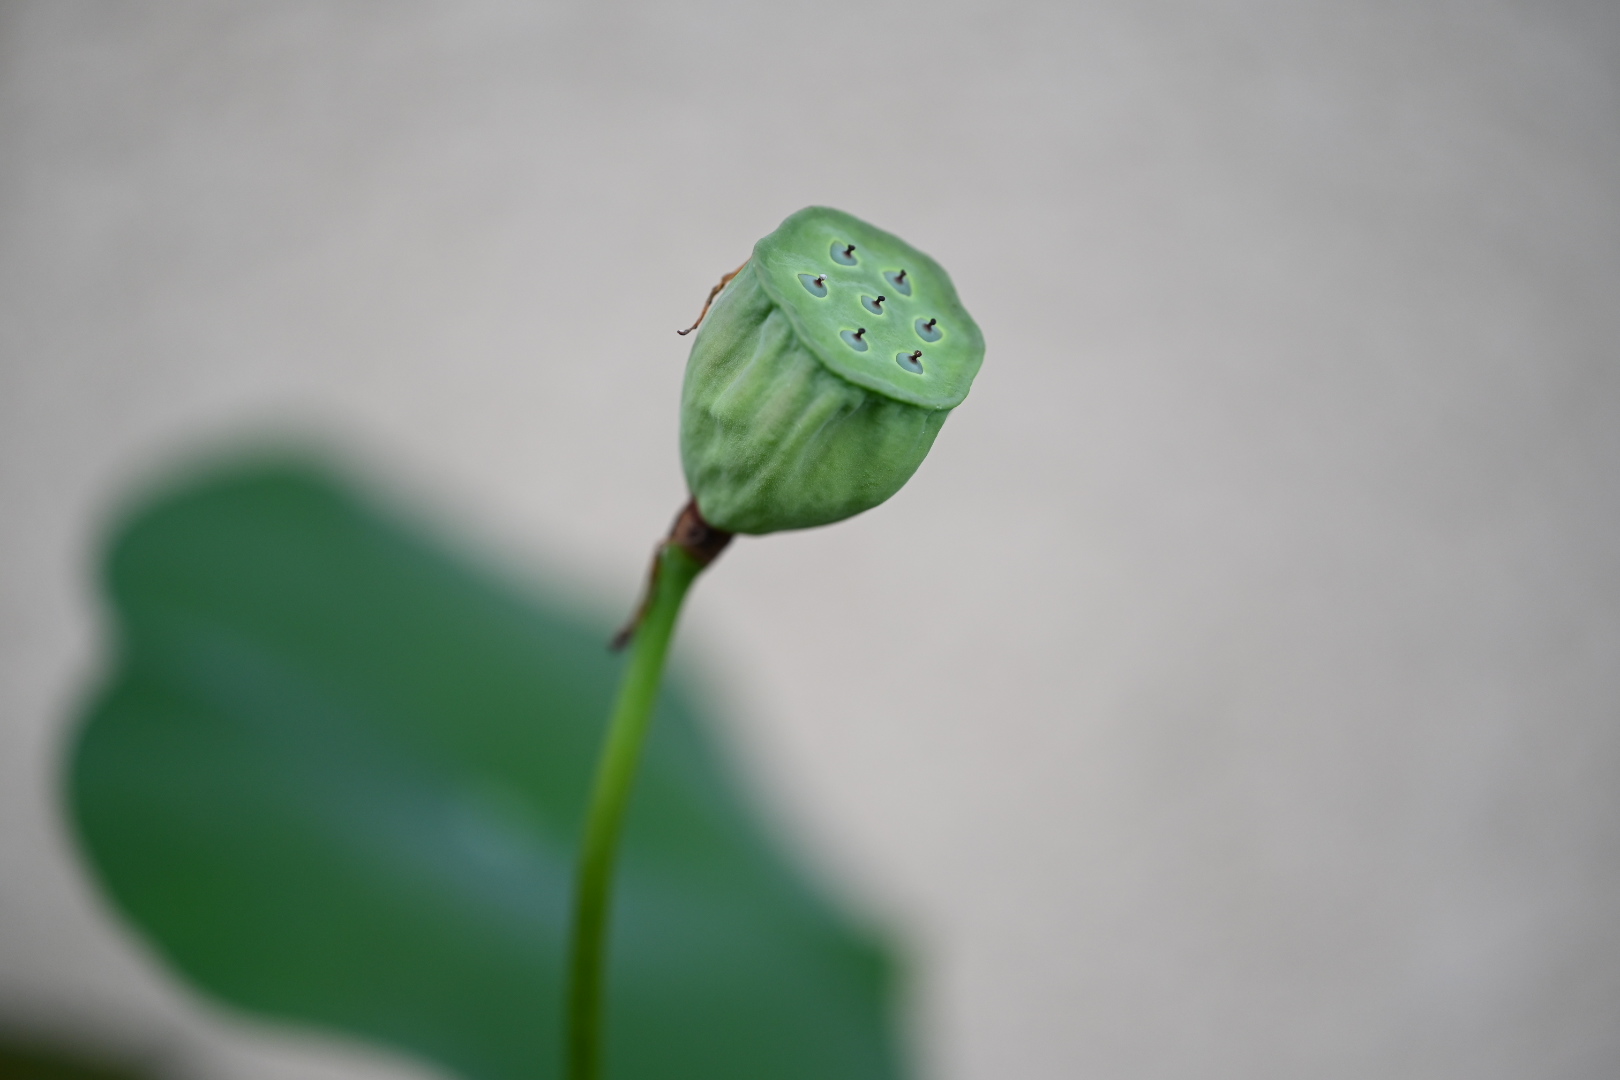 otsuka lotus seeds